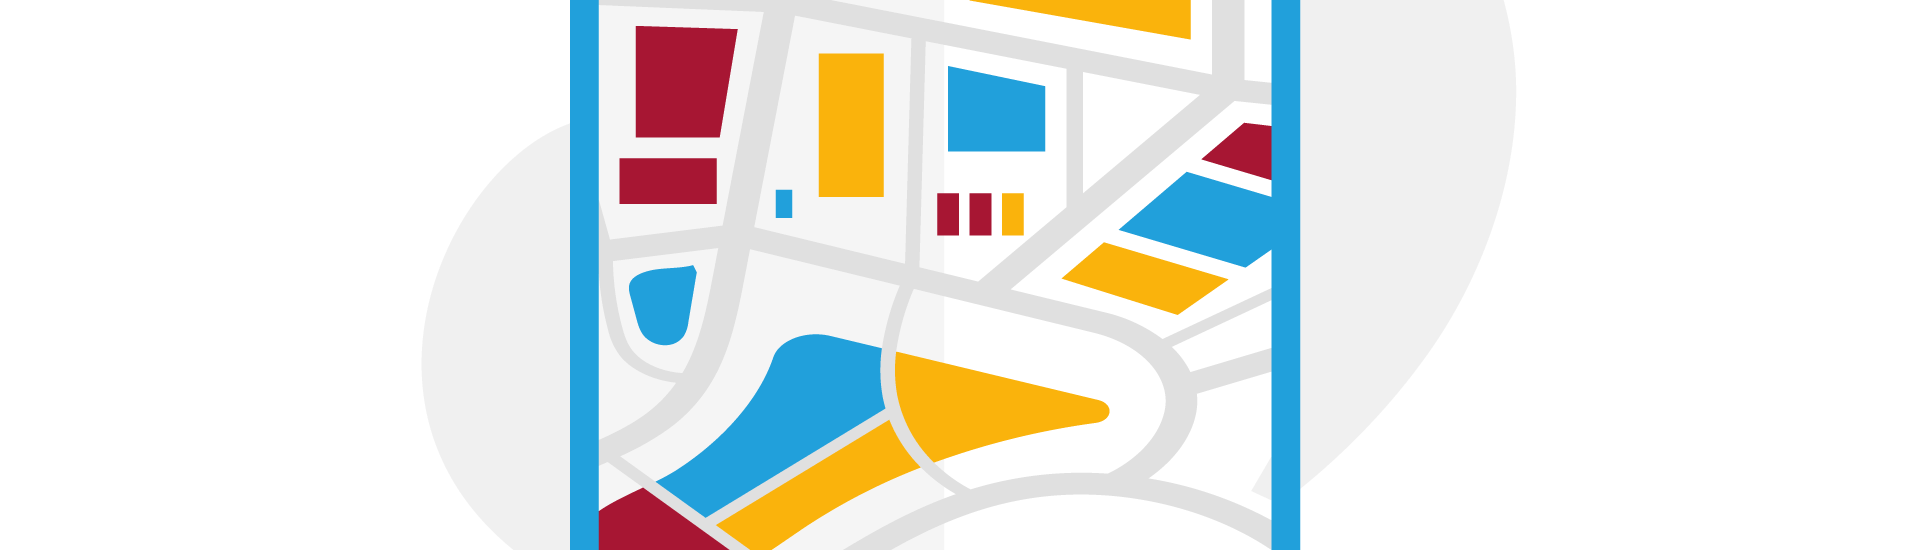 Illustration zum Flächennutzungsplan. Stadtplan mit farbig markierten Flächen. (c) Freepik Storyset